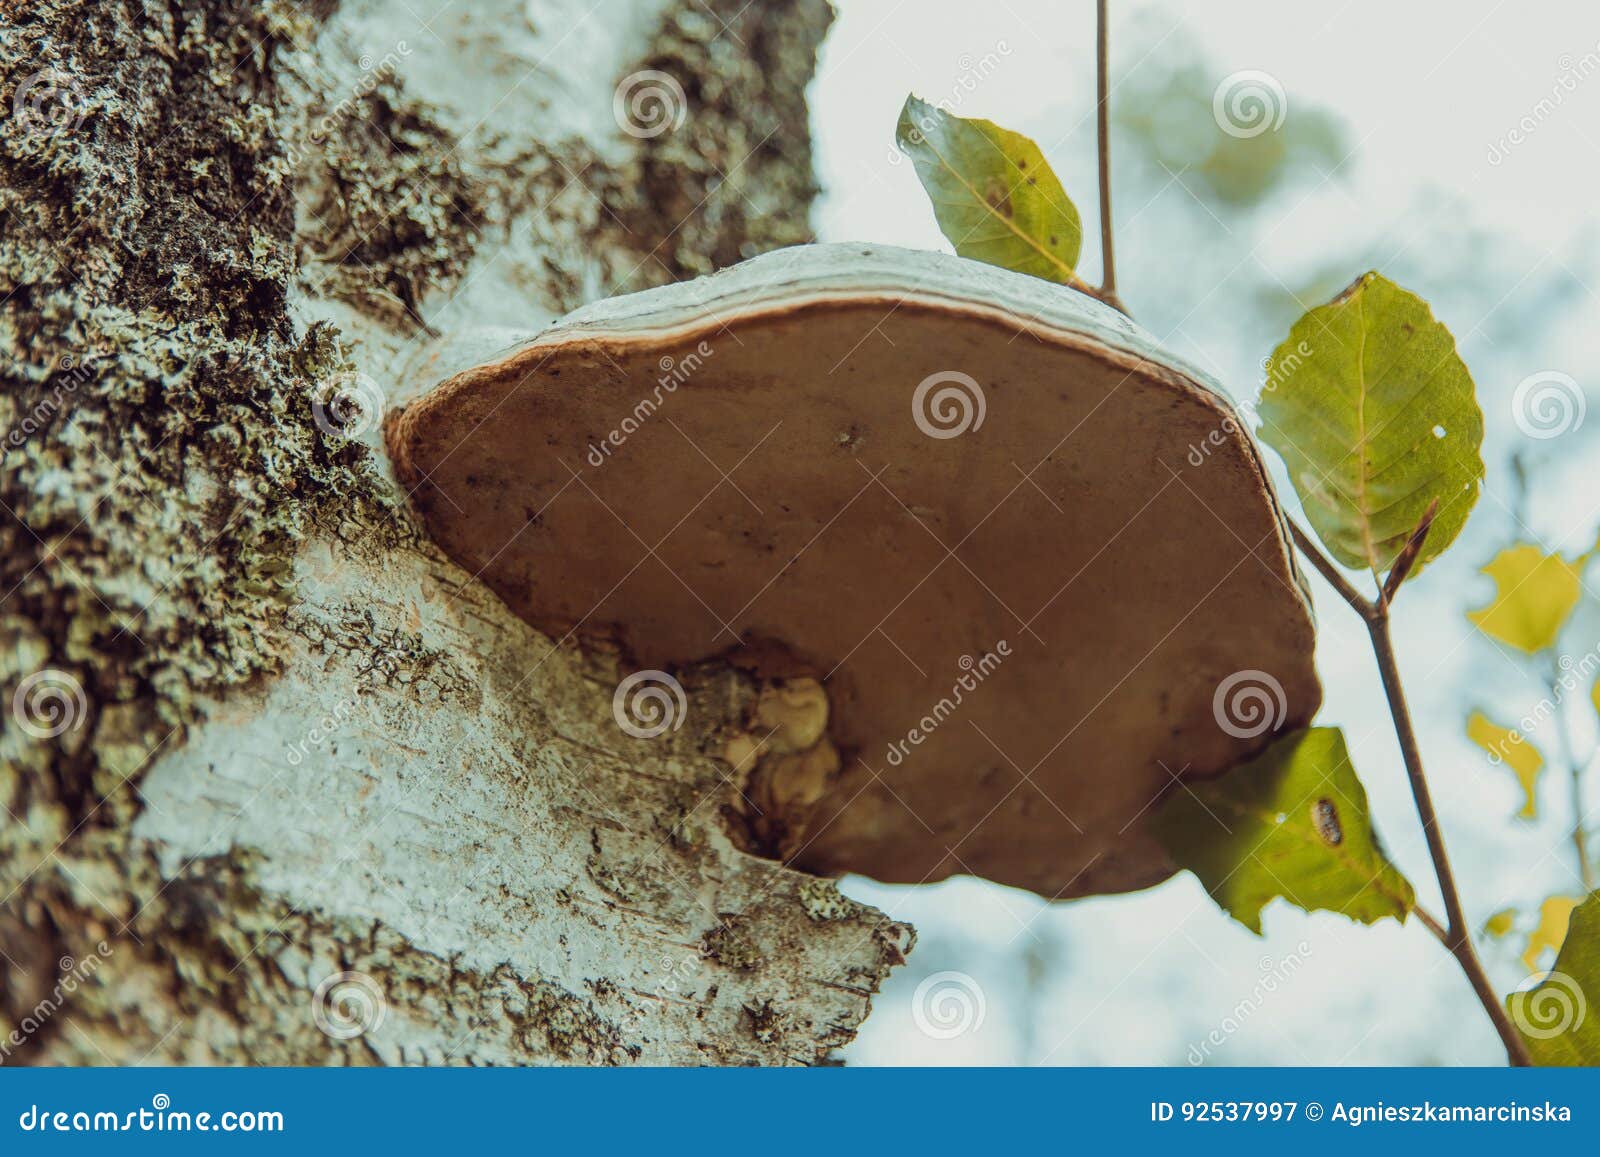 basidiomycota mushroom growing on the tree